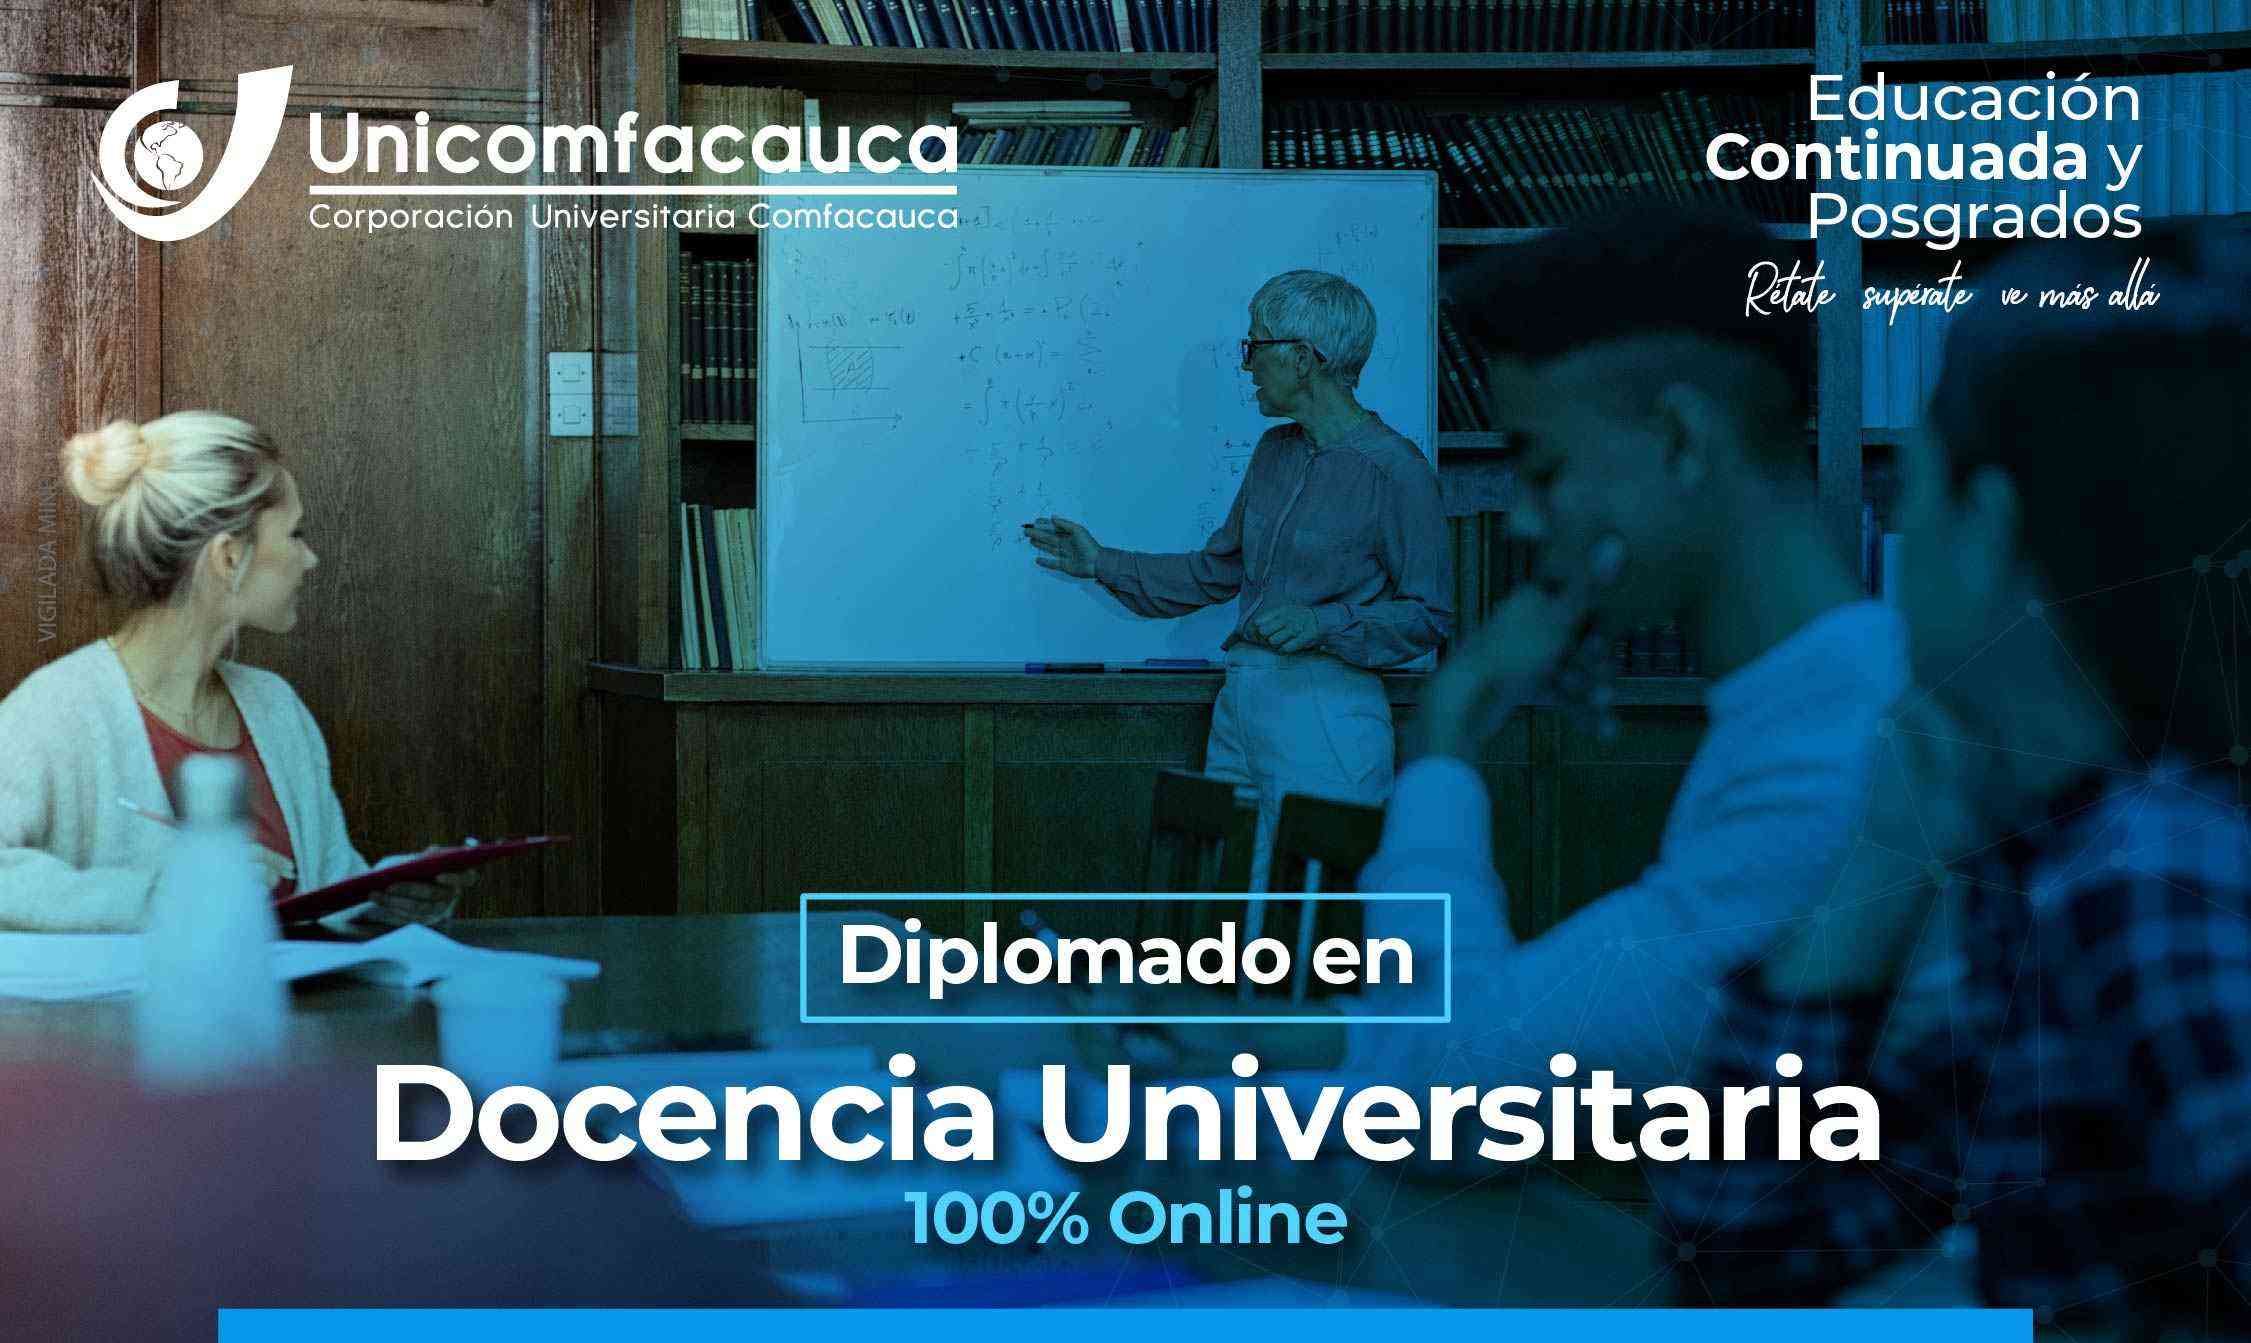 Docencia Universitaria1 05